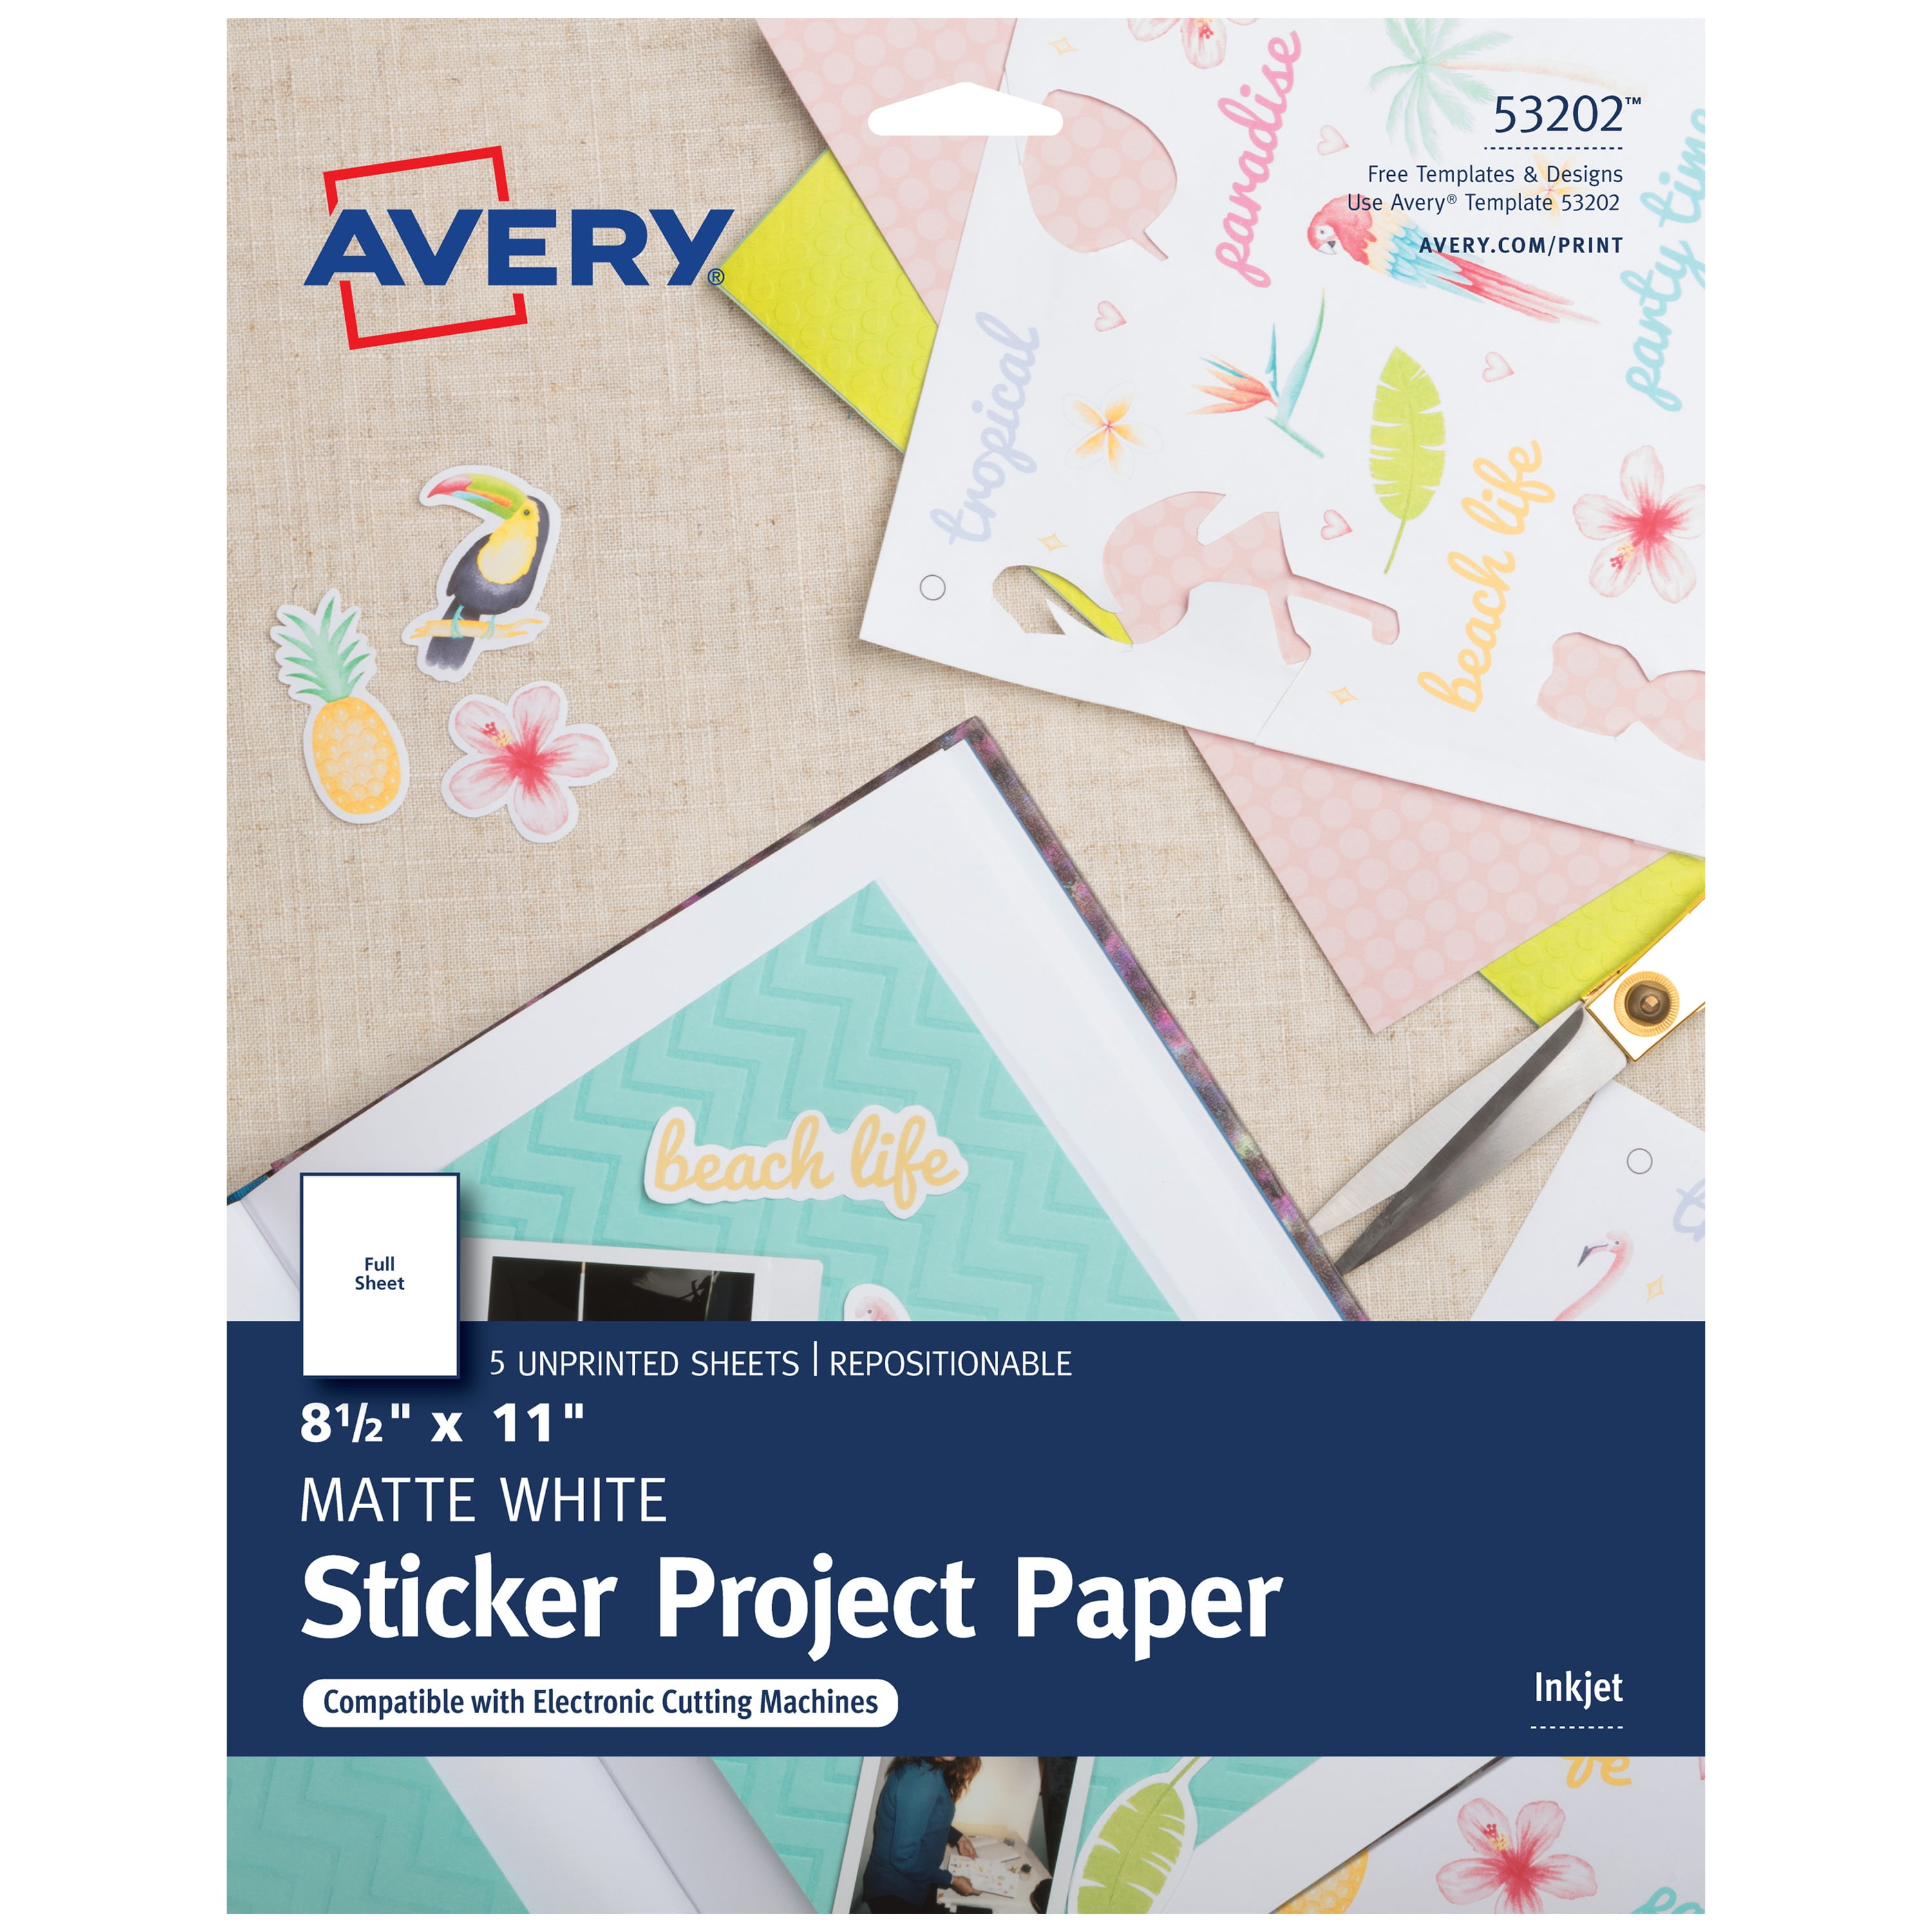 avery-printable-sticker-paper-matte-white-inkjet-5-sheets-53202